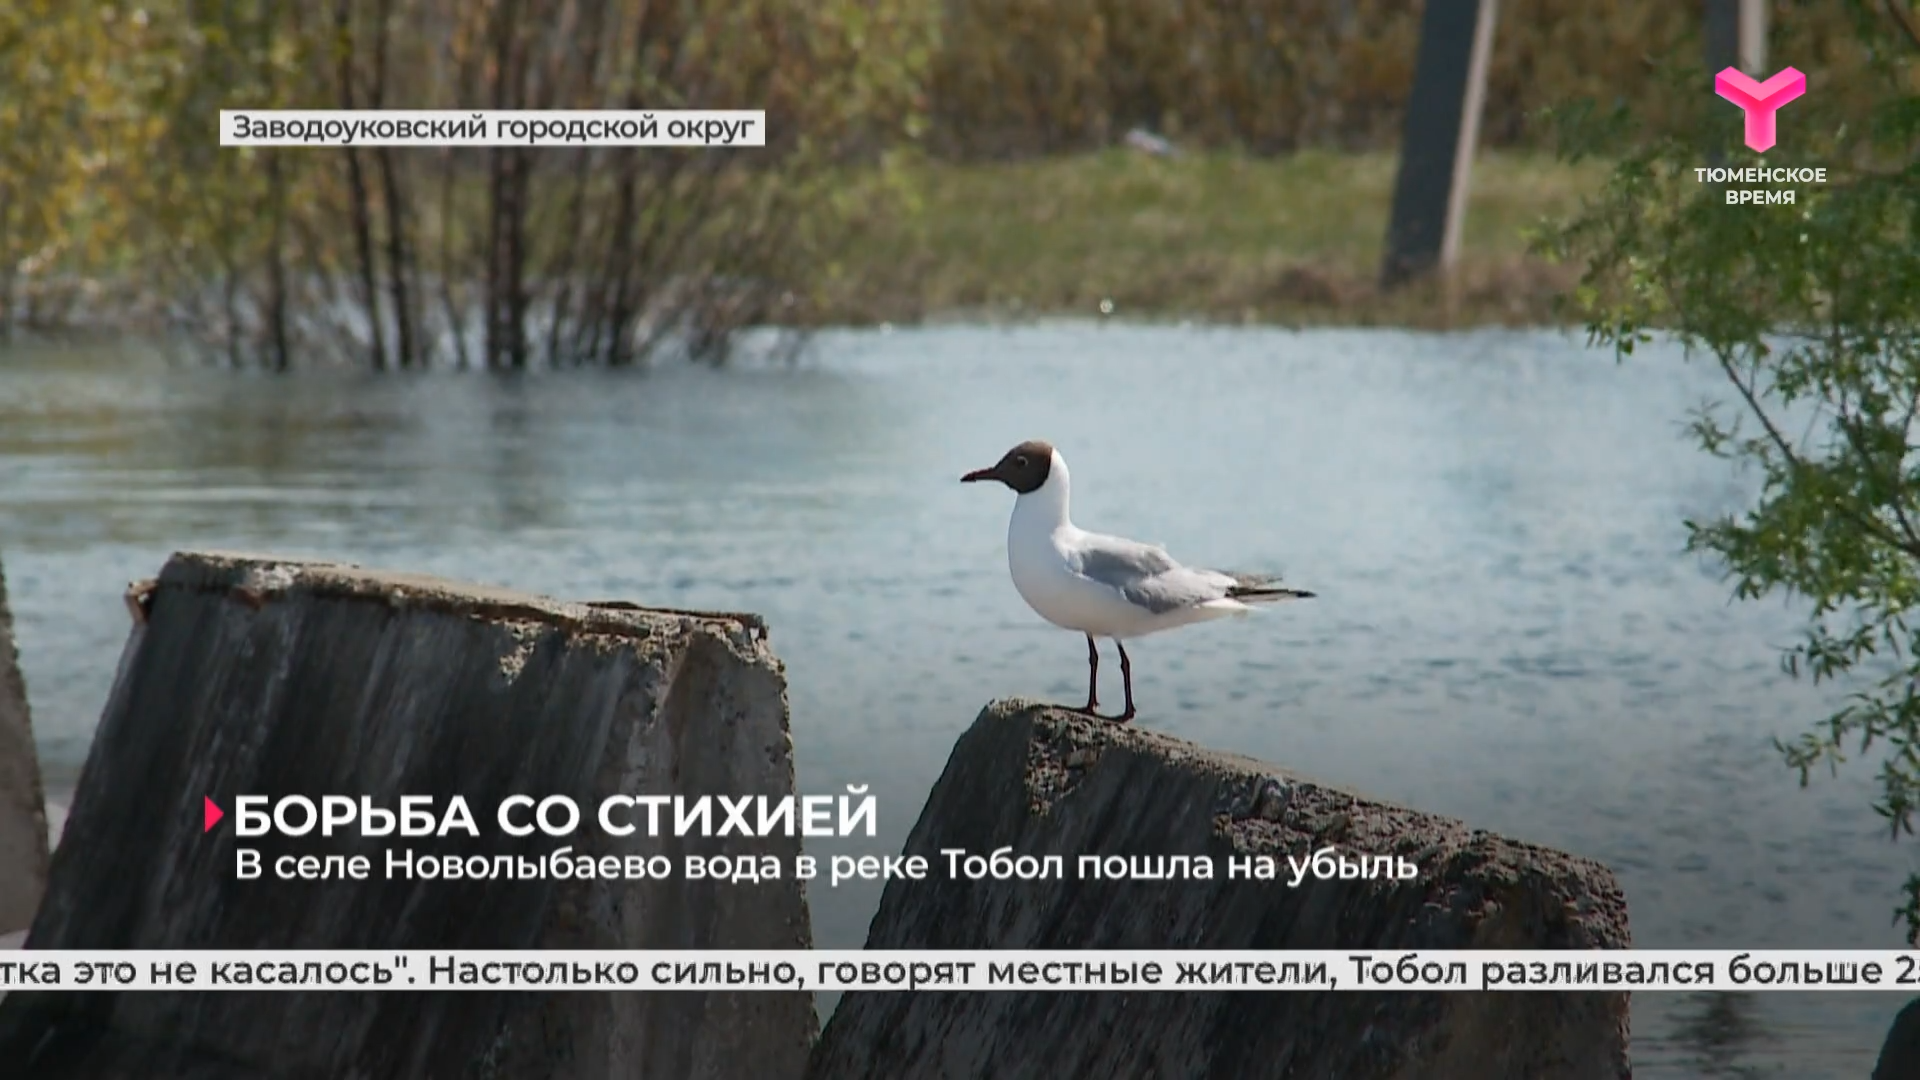 В селе Новолыбаево вода в реке Тобол пошла на убыль